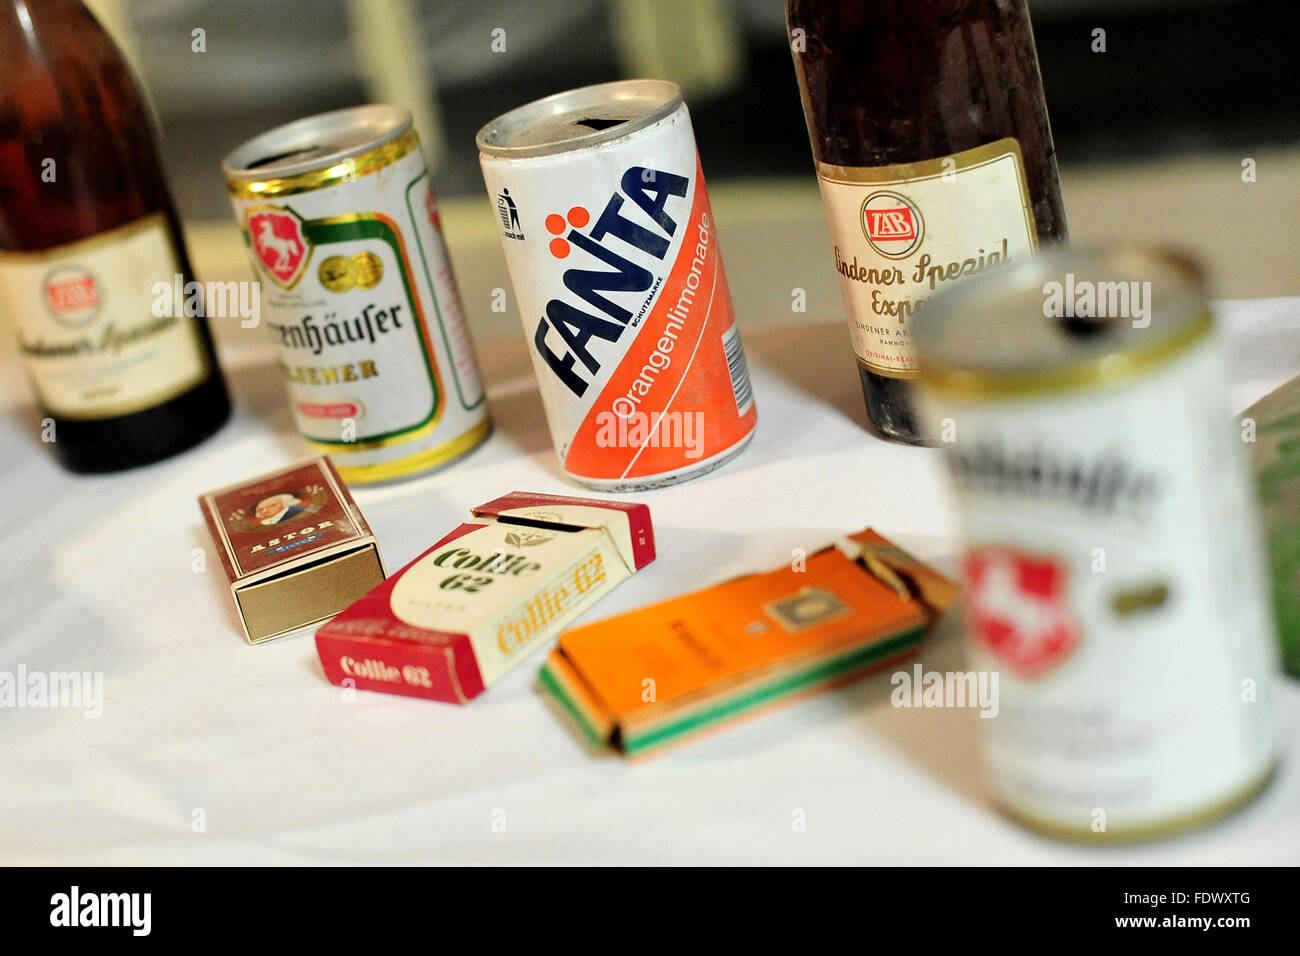 Hanovre, Allemagne, de canettes, bouteilles et boîtes de cigarettes depuis les années 1960 Banque D'Images